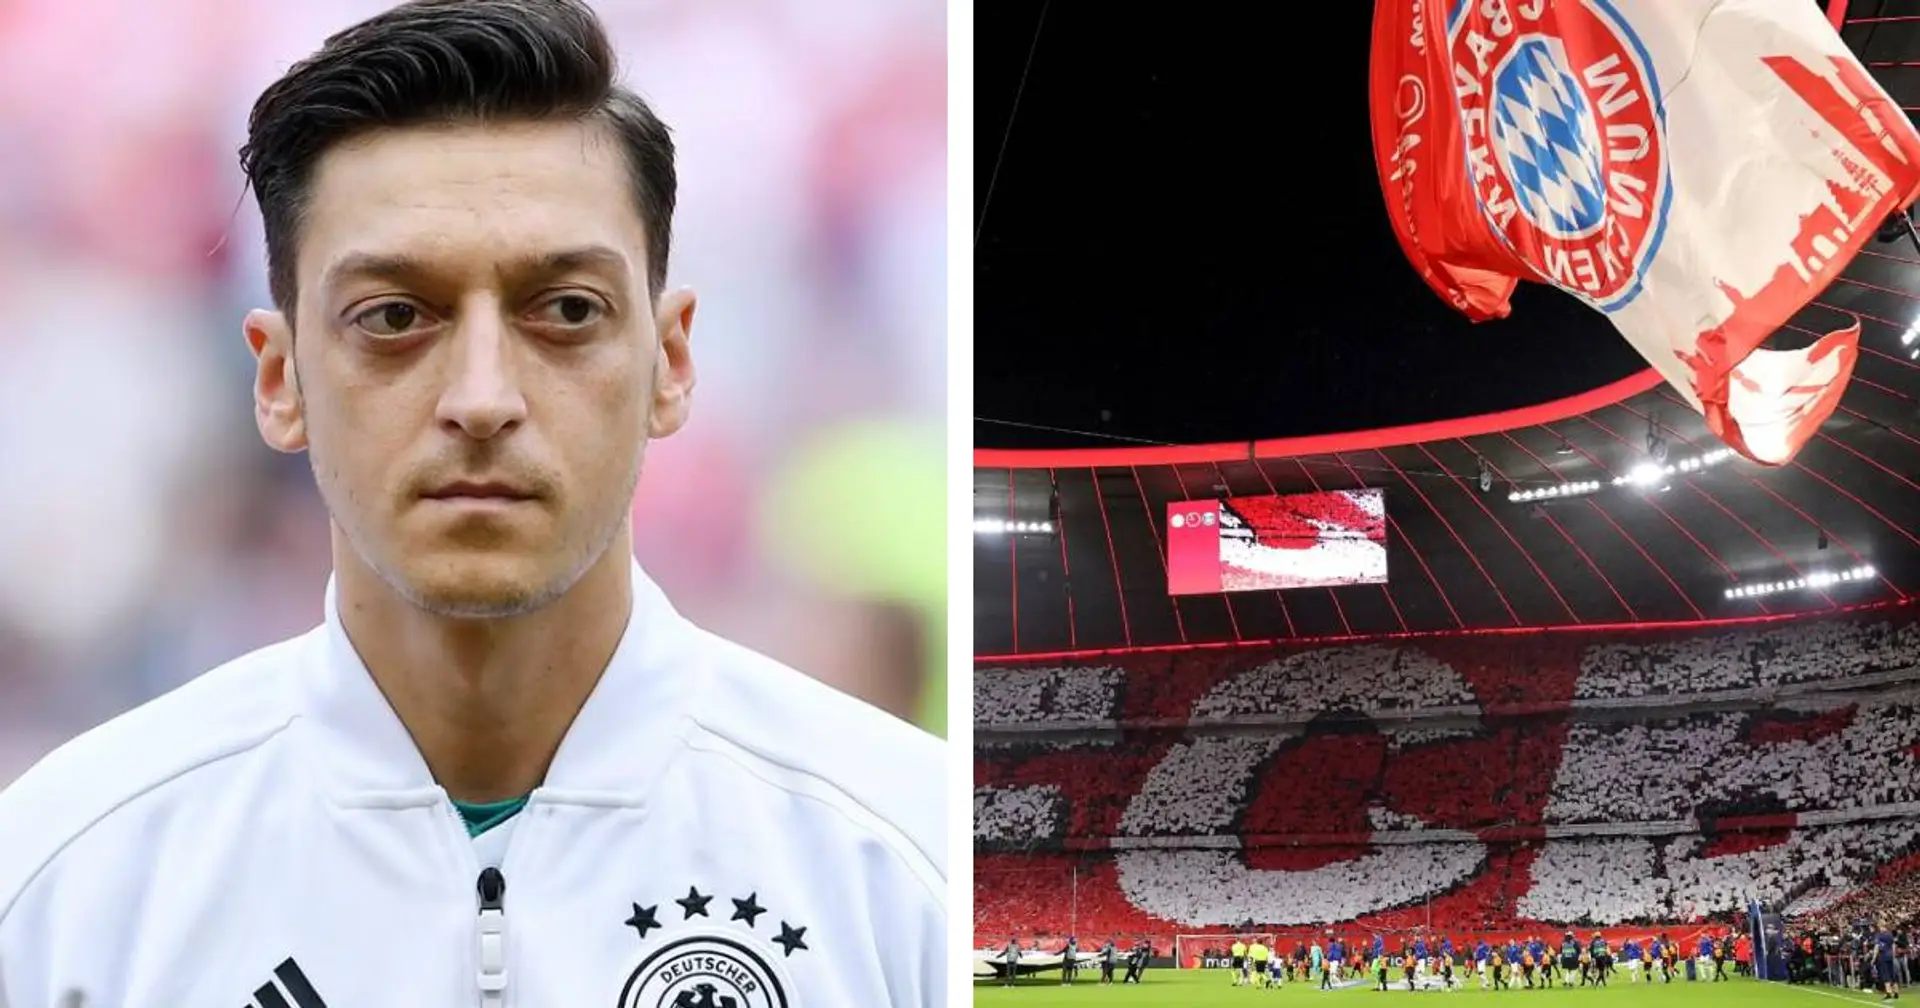 Özils Vater enthüllt: 2010 hätte Mesut zu Bayern wechseln können, aber der Deal scheiterte aus kuriosem Grund